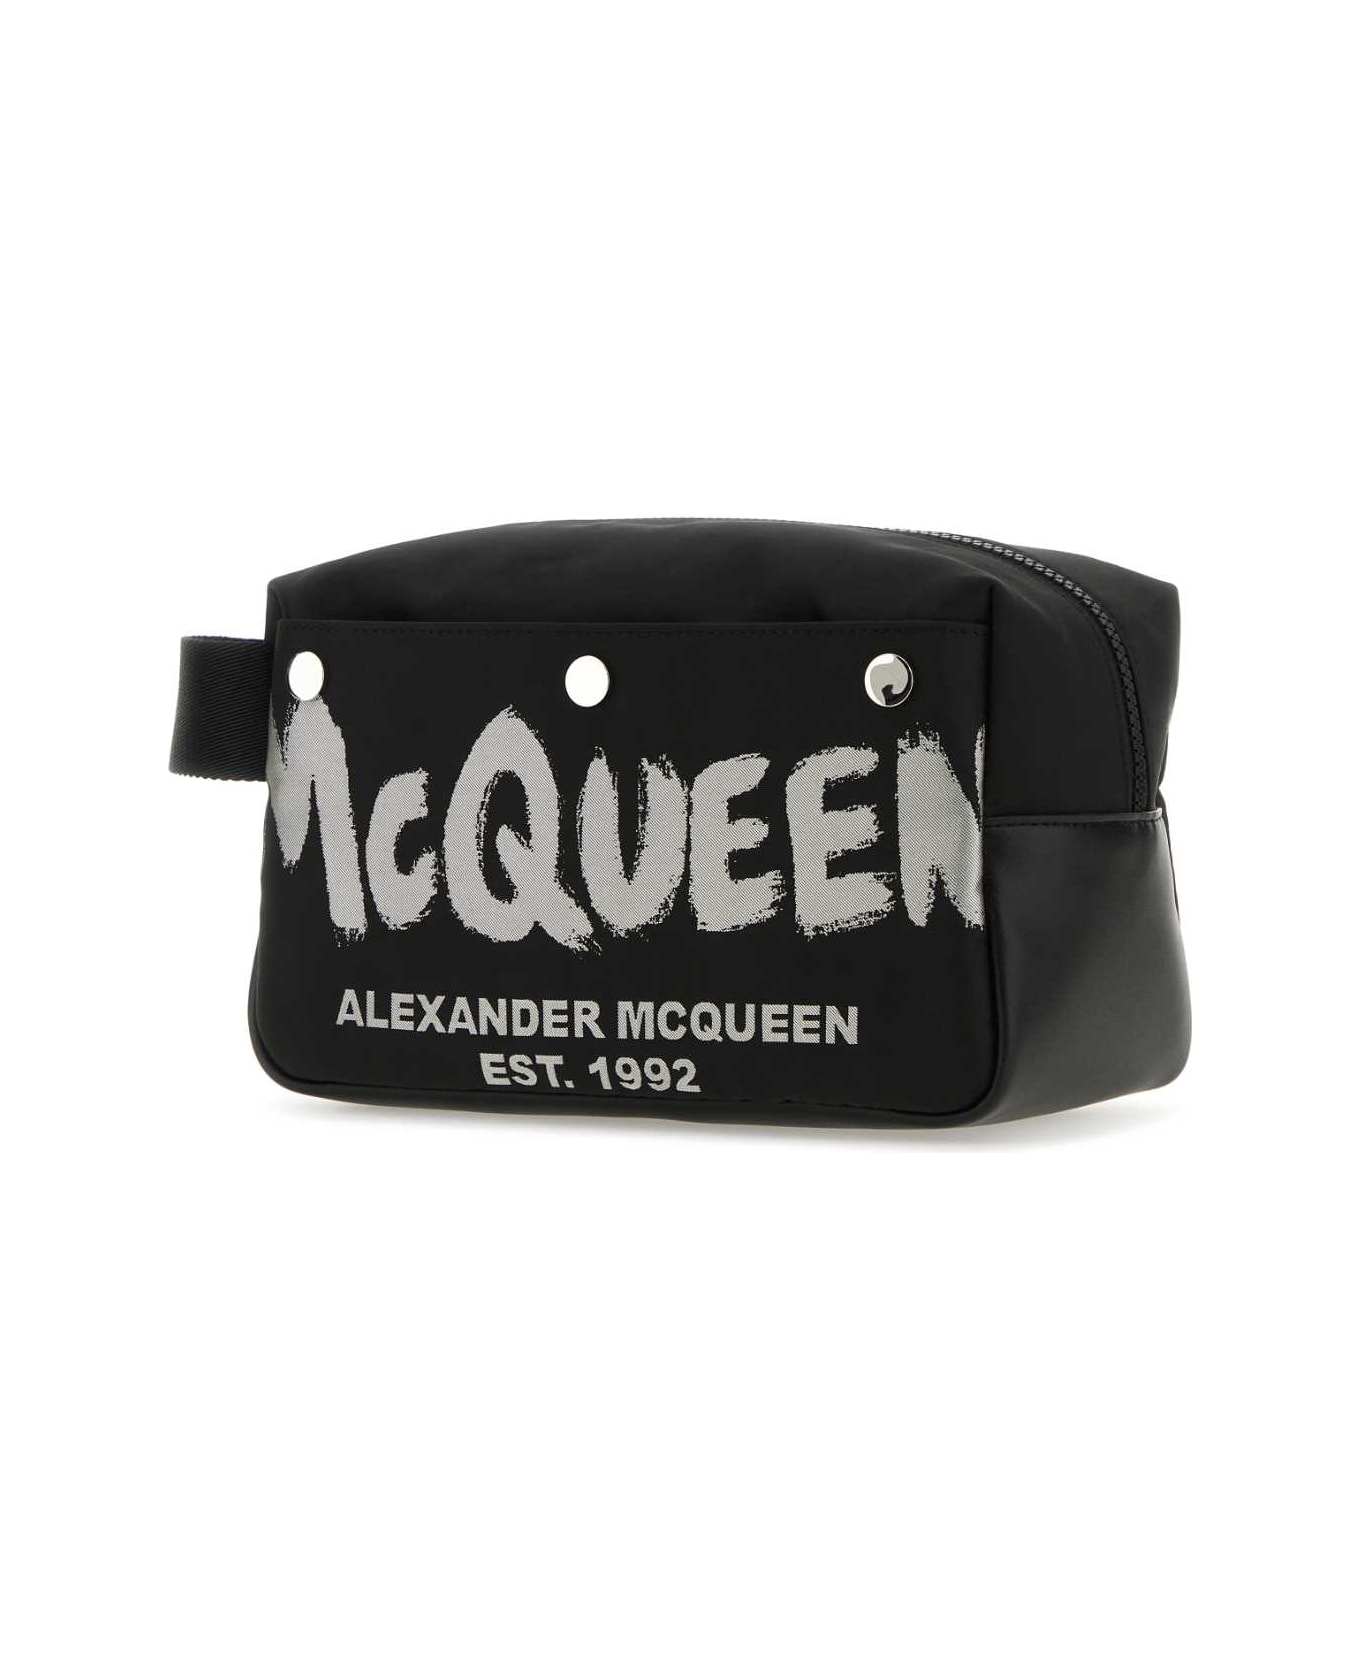 Alexander McQueen Black Fabric Mcqueen Graffiti Beauty Case - BLACKOFFWHITE ベルトバッグ